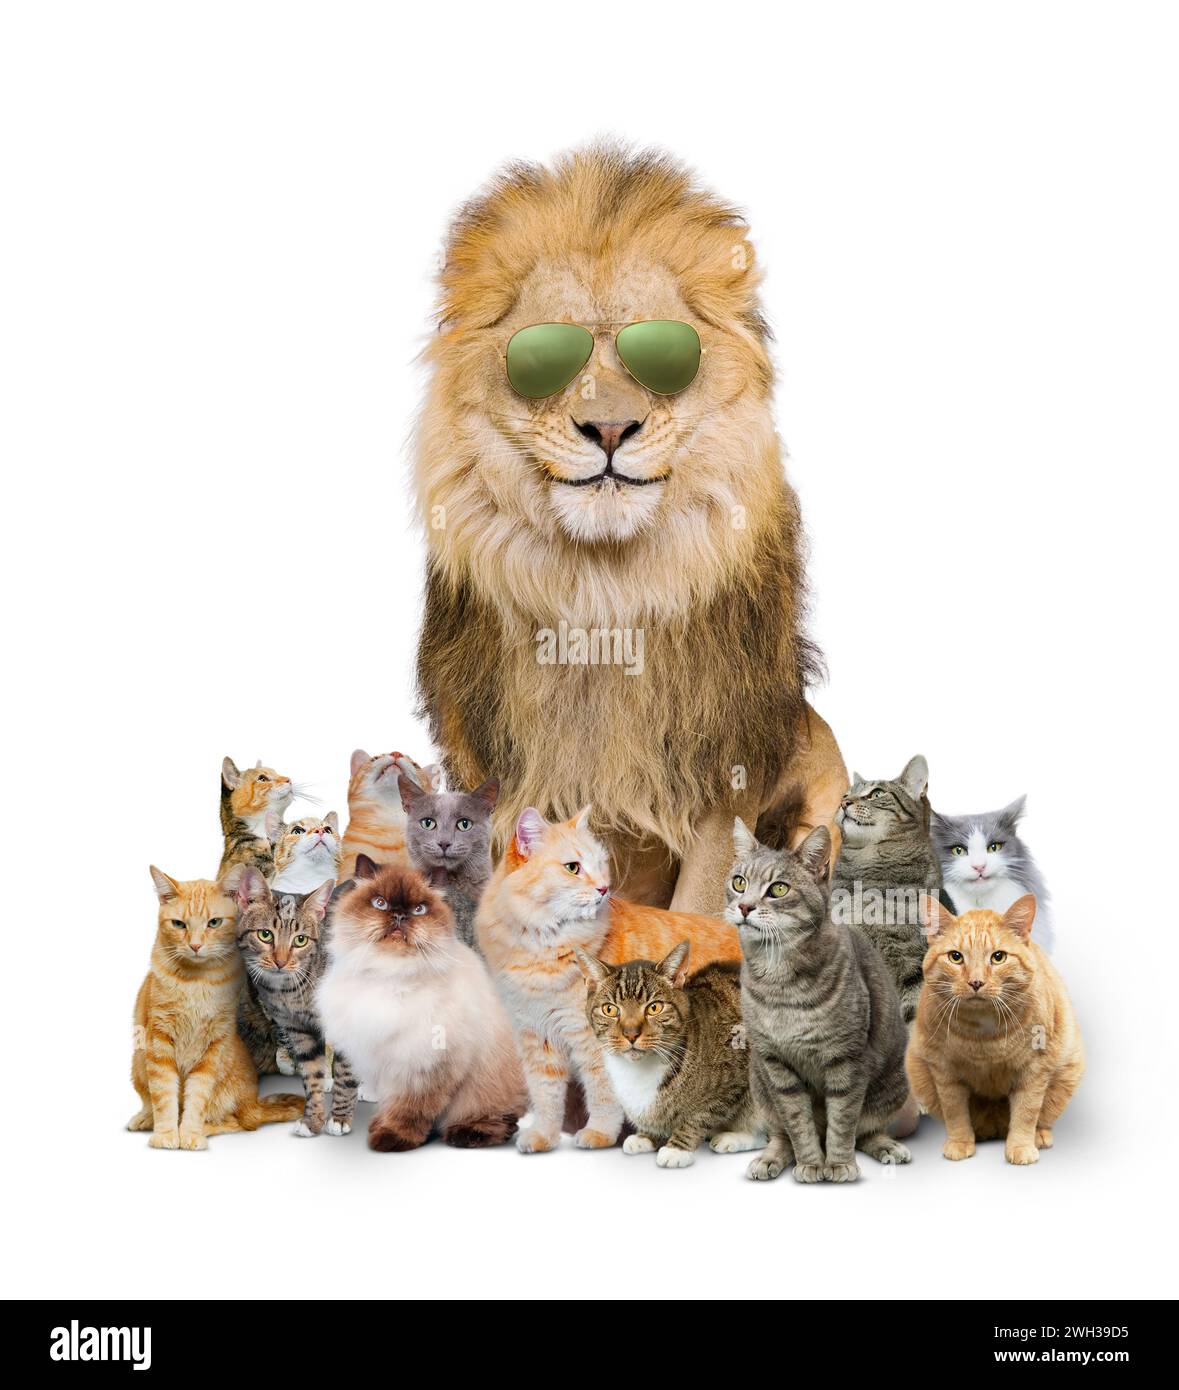 Grand chat cool : un lion porte des lunettes de soleil aviateur et est assis parmi un clowder, ou un groupe, de chats domestiques dans une image amusante sur se démarquer de la foule. Banque D'Images